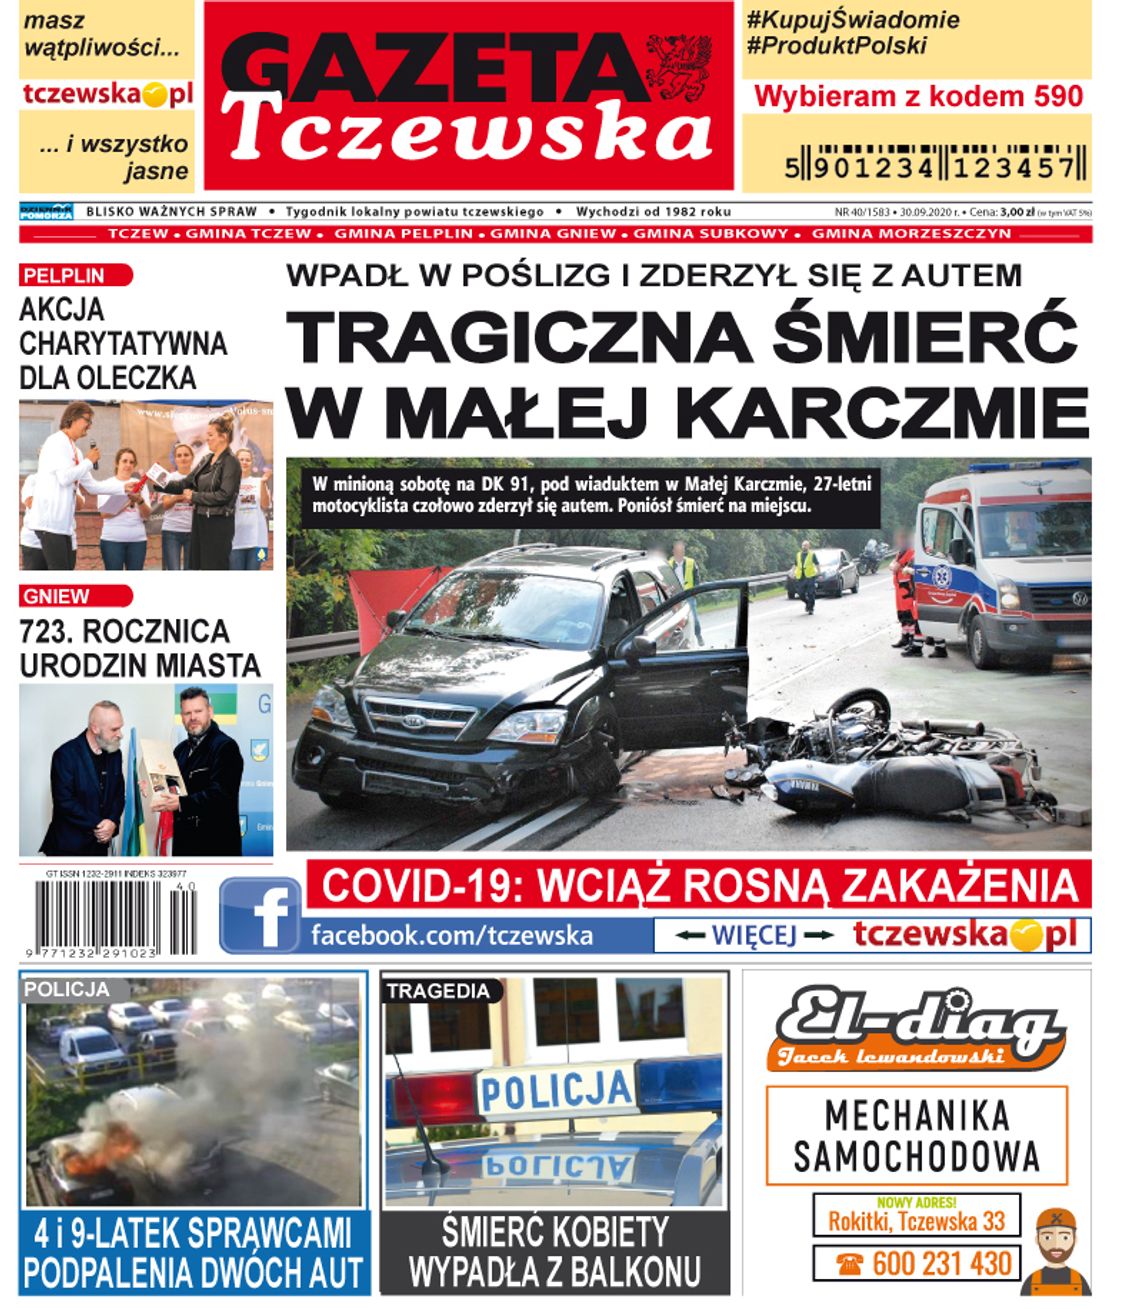 Najświeższe wiadomości z Tczewa i gmin powiatu dostępne w Gazecie Tczewskiej. Nowy numer tygodnika już dziś w Twoim sklepie! Co w środku?